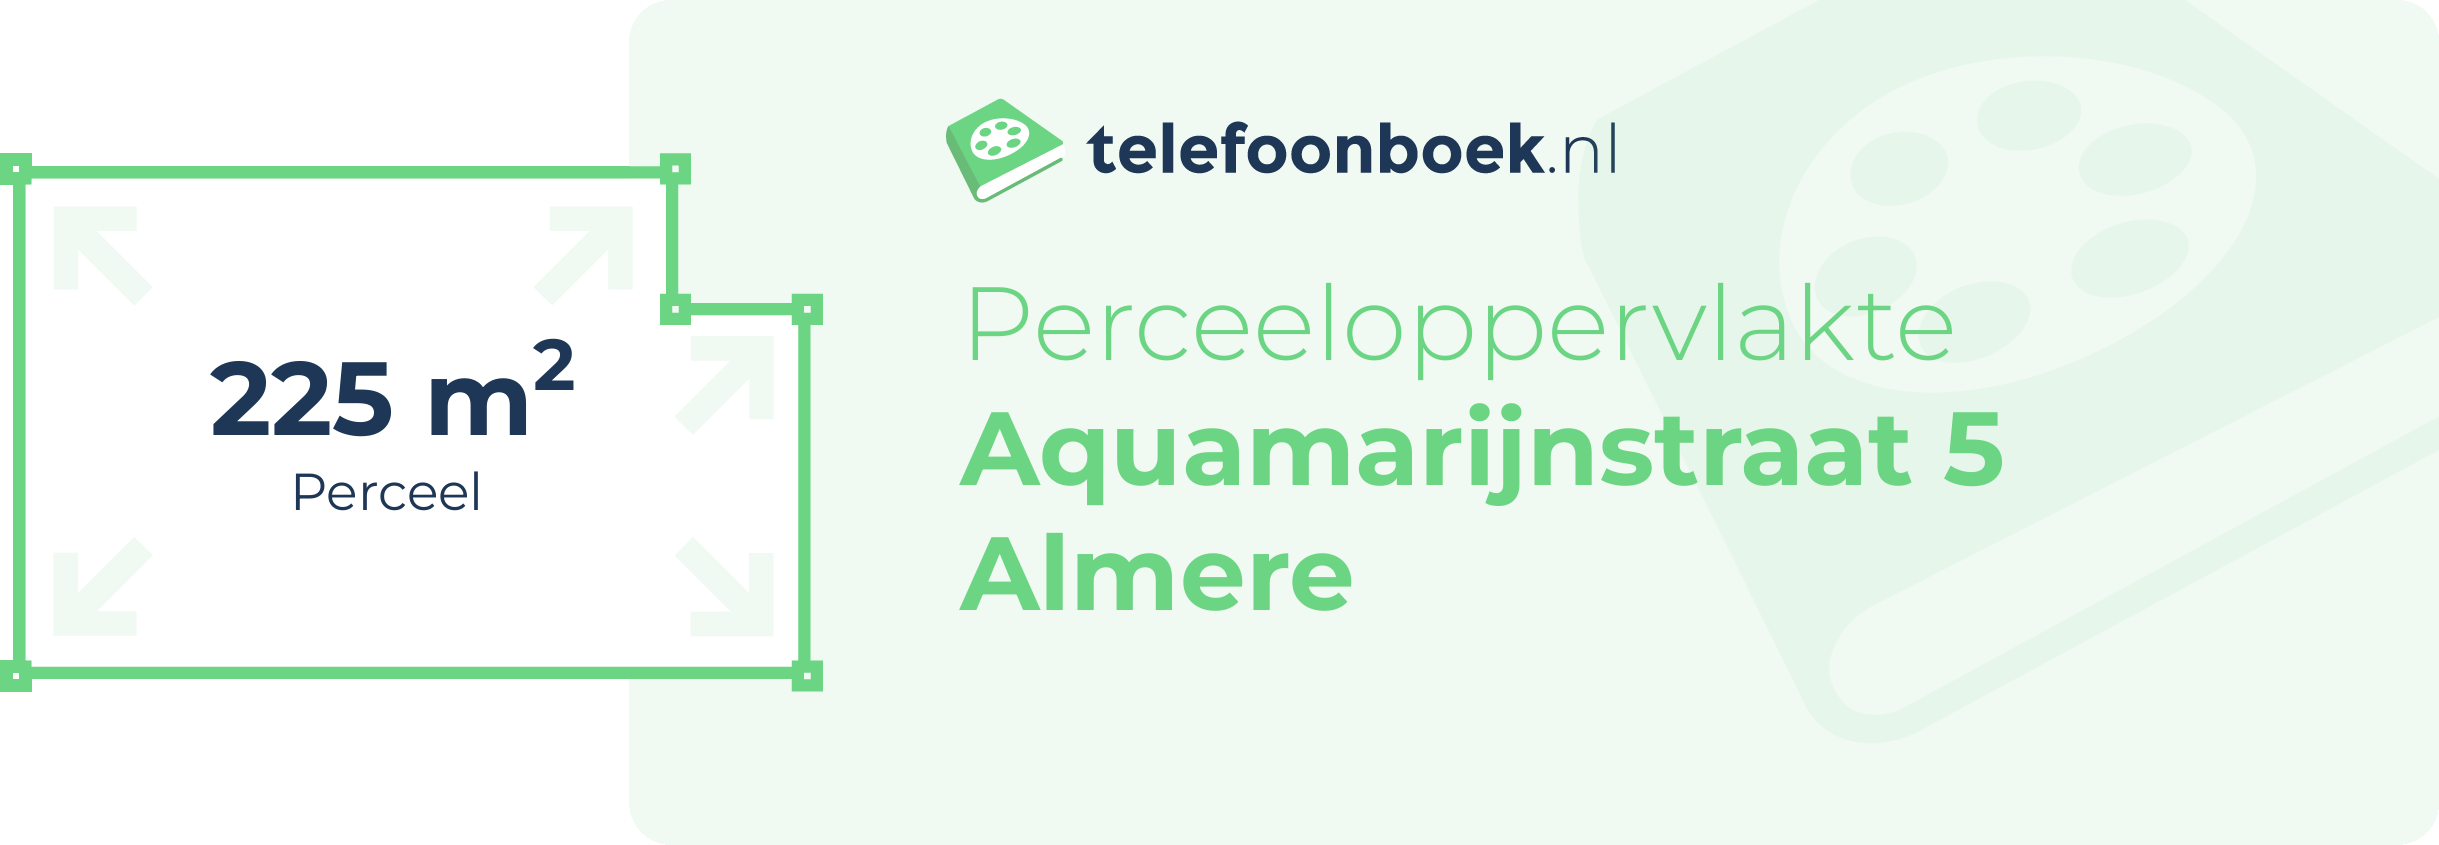 Perceeloppervlakte Aquamarijnstraat 5 Almere